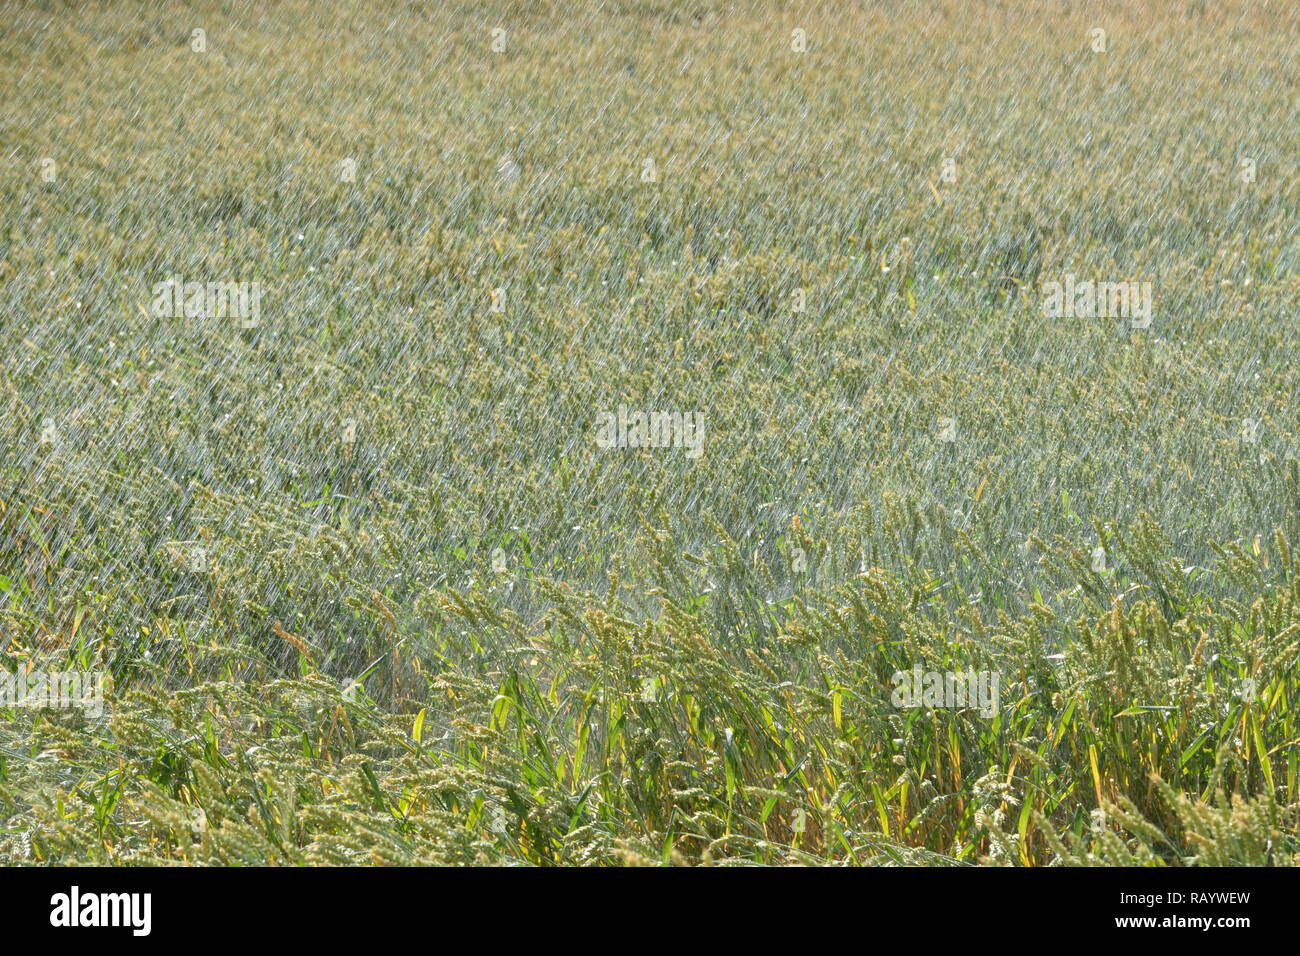 Máquina de riego con aspersores rociando agua sobre tierras agrícolas durante una sequía en verano, el riego de un campo de trigo, el caluroso verano de 2018. Foto de stock